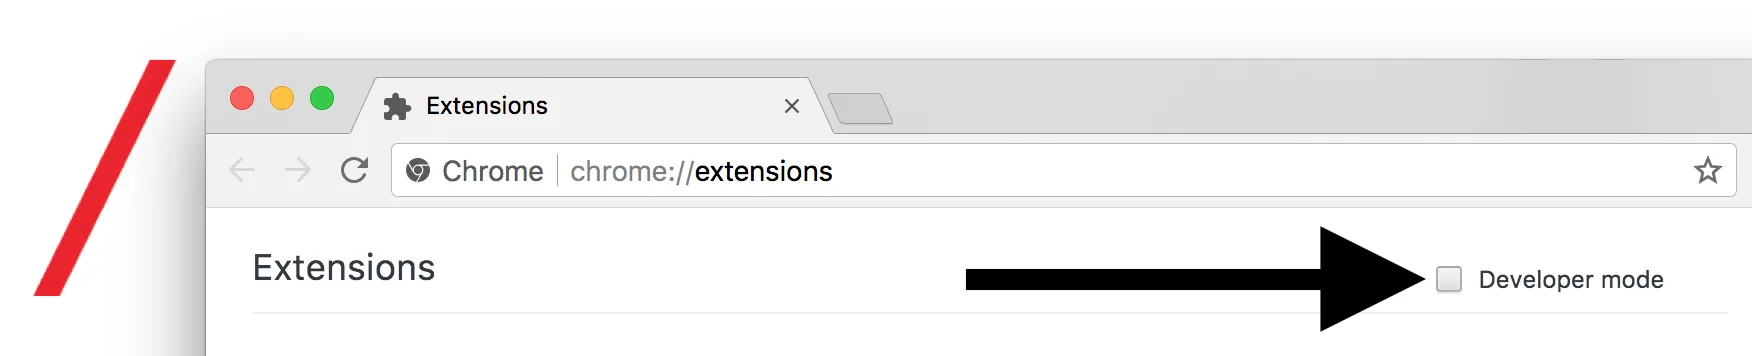 Enable developer mode google chrome extension" caption="Enable developer mode google chrome extension